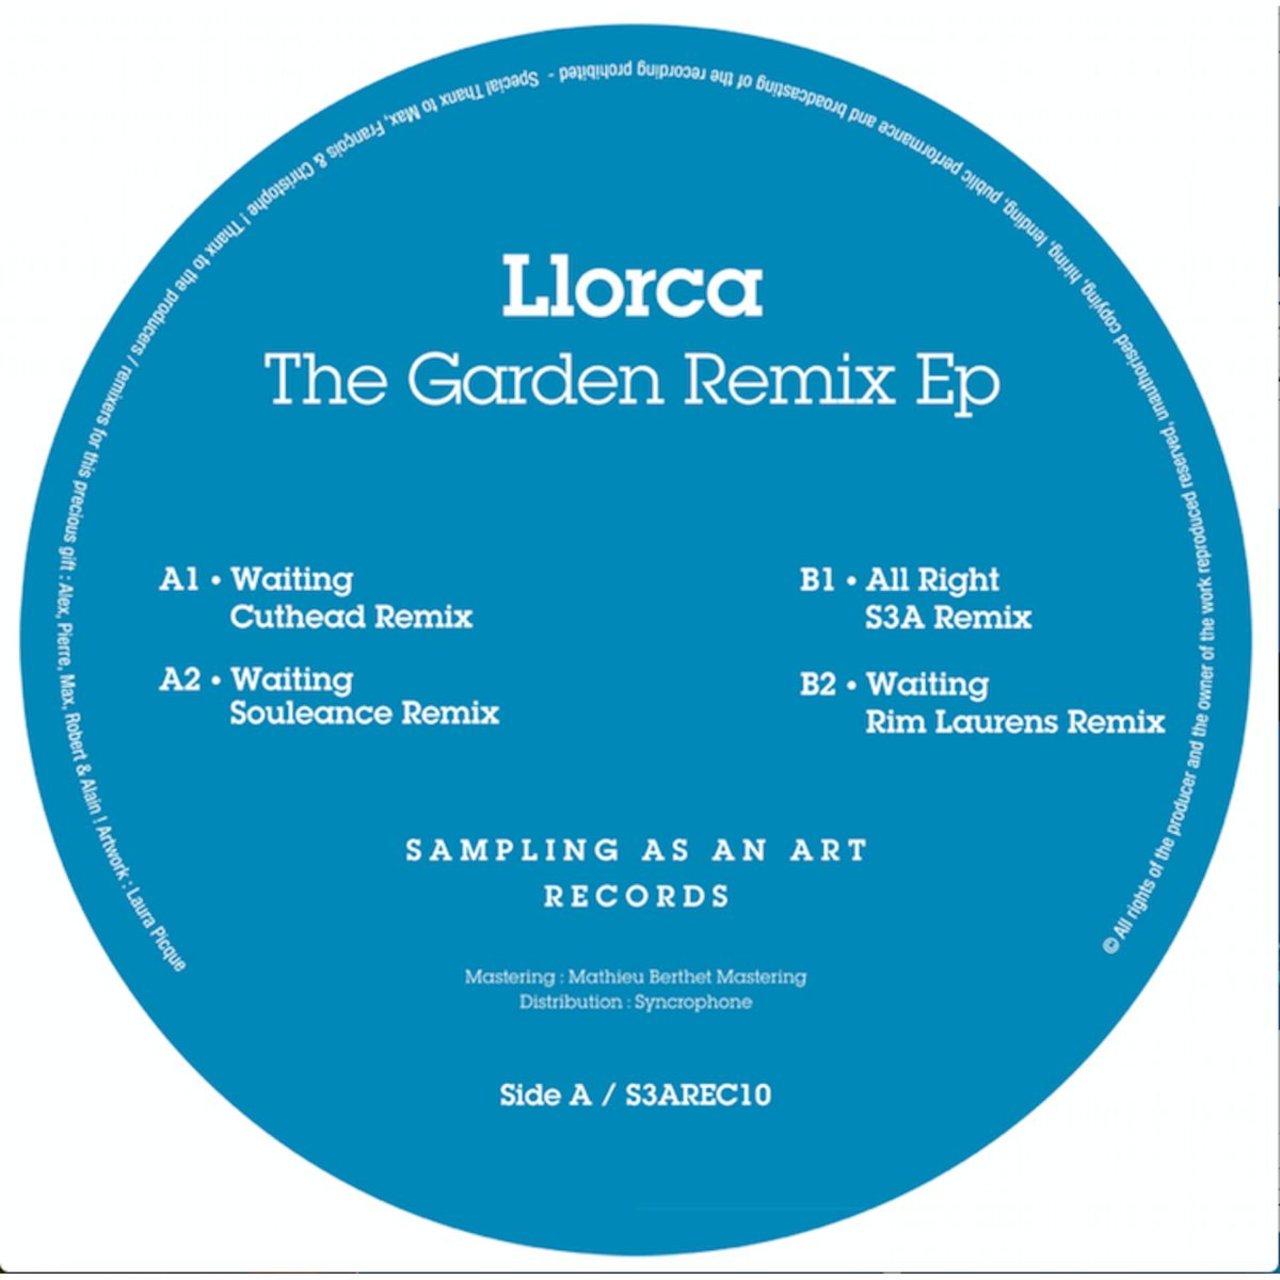 Llorca - The Garden Remix EP / Sampling As An Art Records